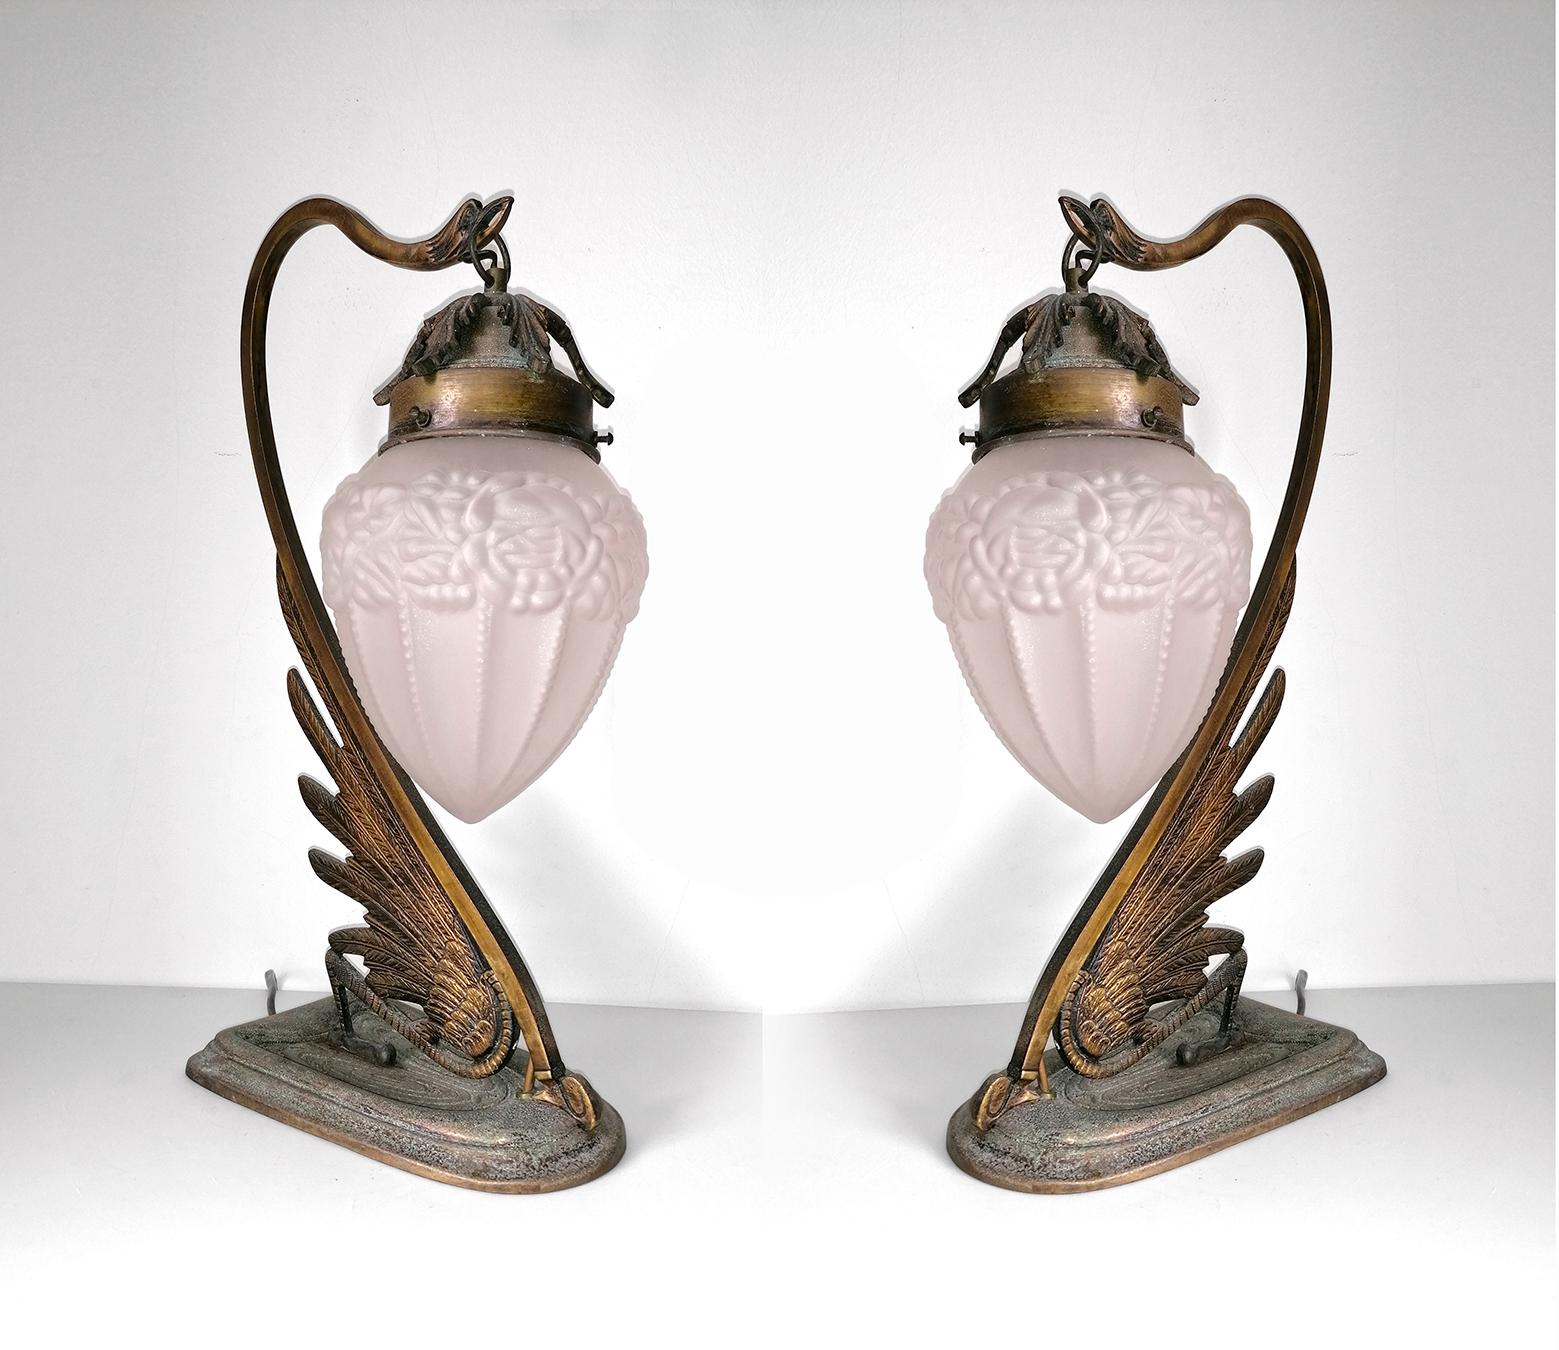 Cast Pair of French Art Deco & Art Nouveau Ornate Bronze, Glass Flower Table Lamps